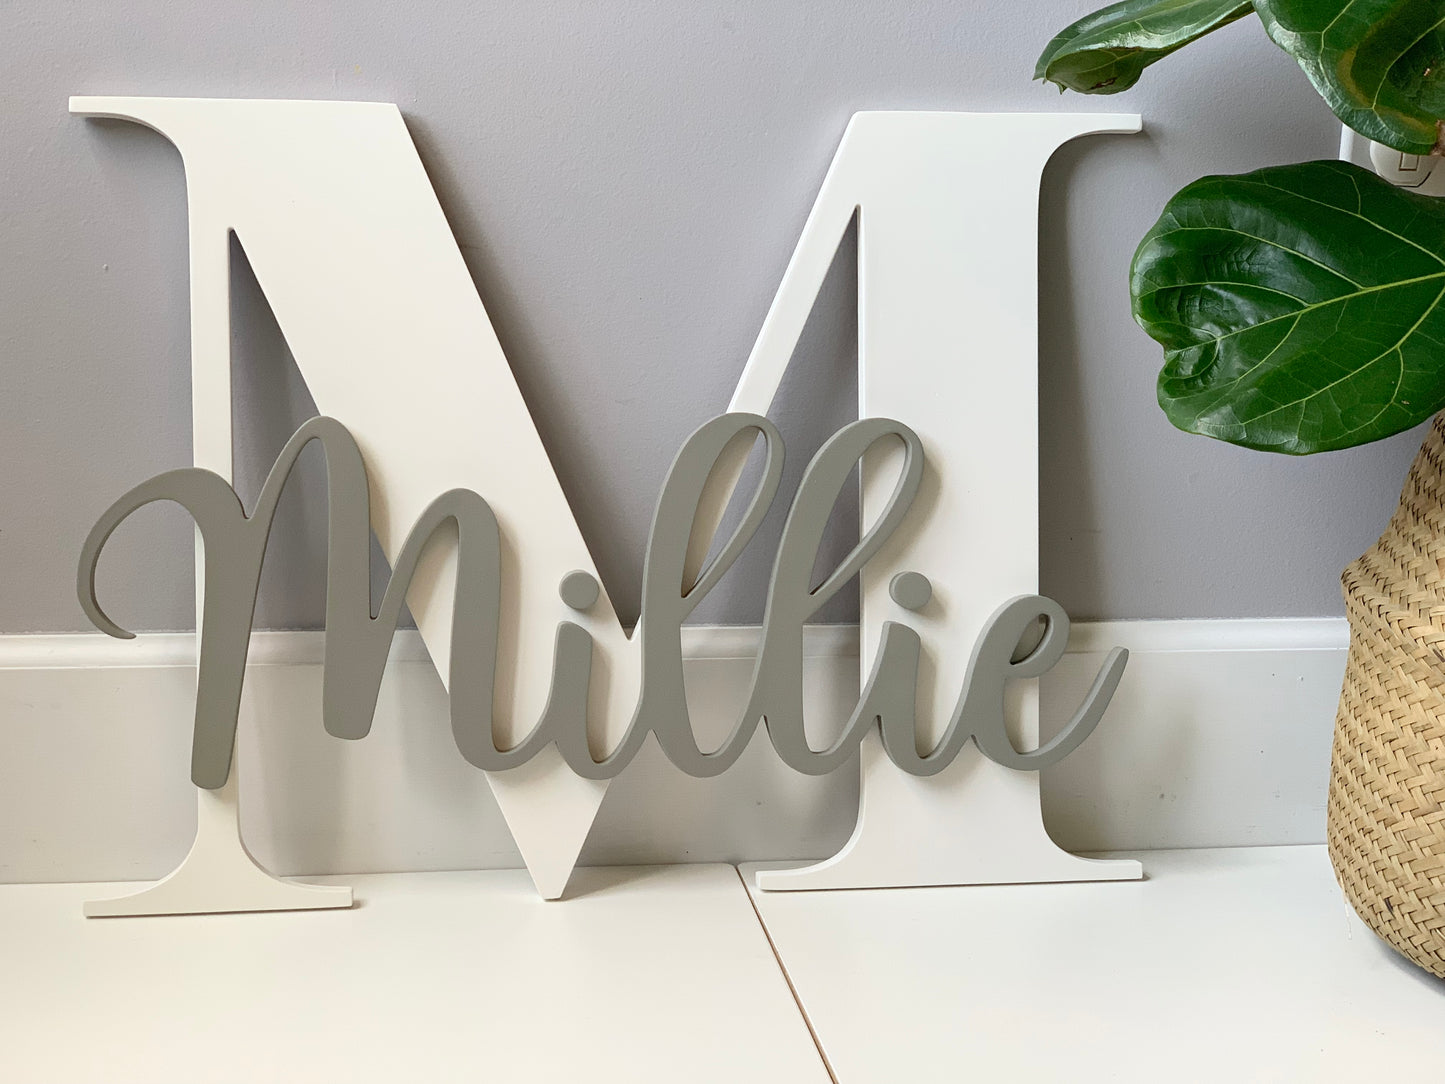 3D Letter Name Sign